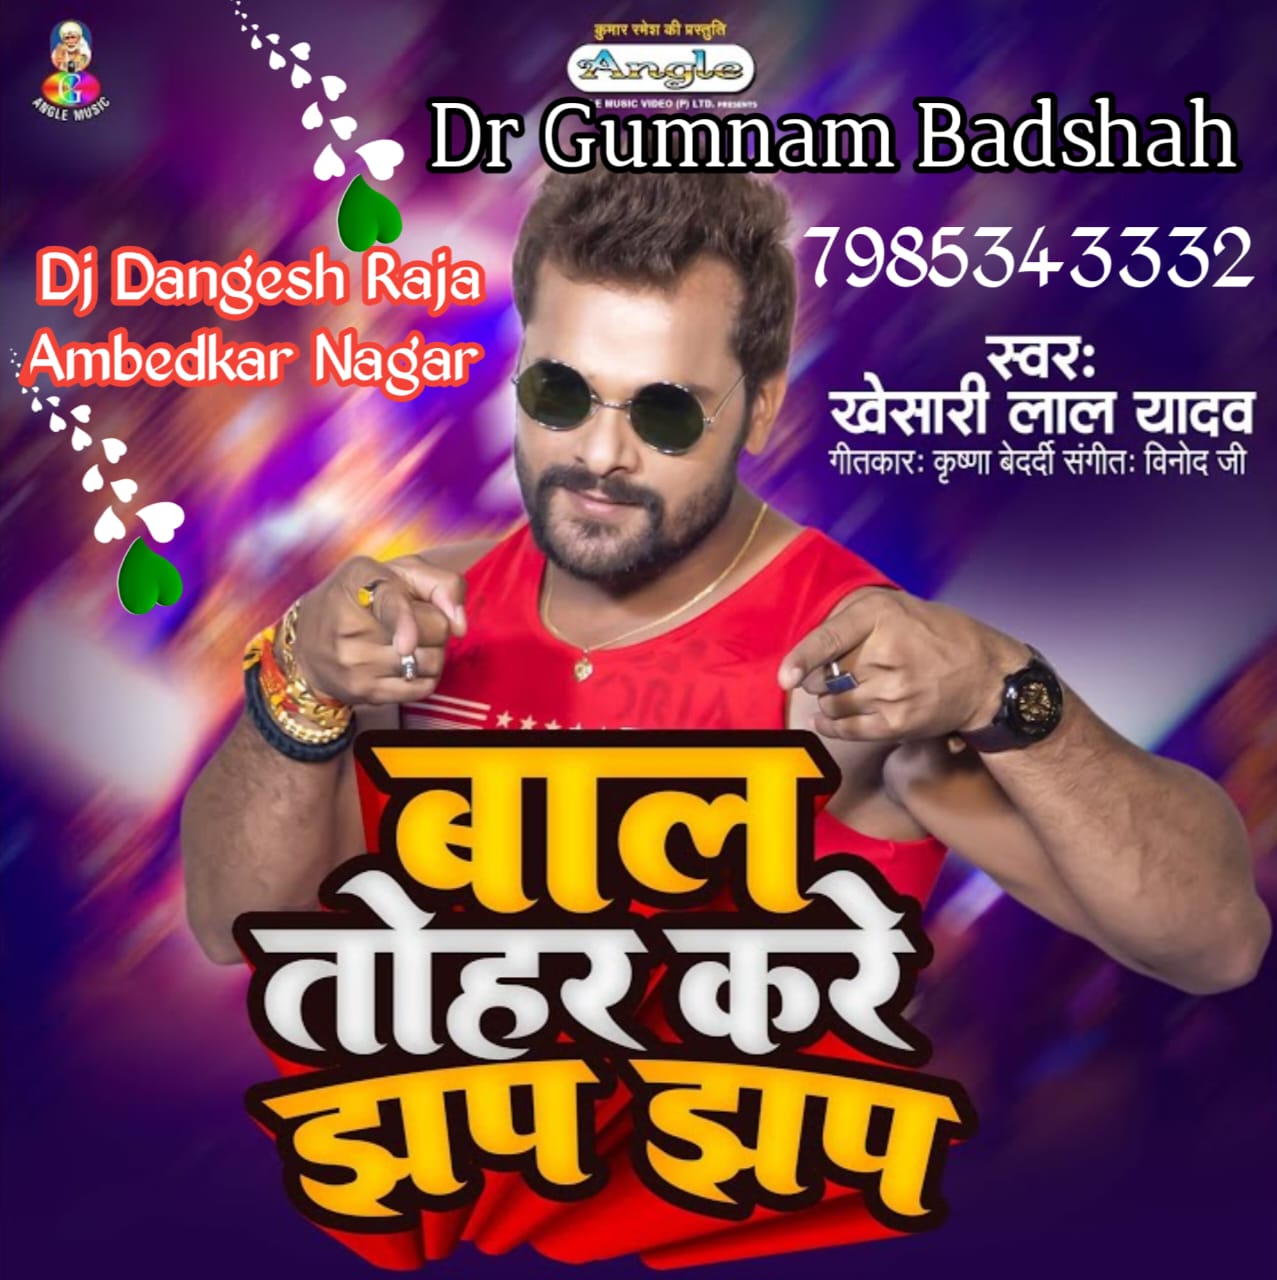 Nibu Kharbuja Bhail Instagram Viral Bhojpuri Song Khesari Lal Yadav Dj Dangesh Raja Ambedkar Nagar 